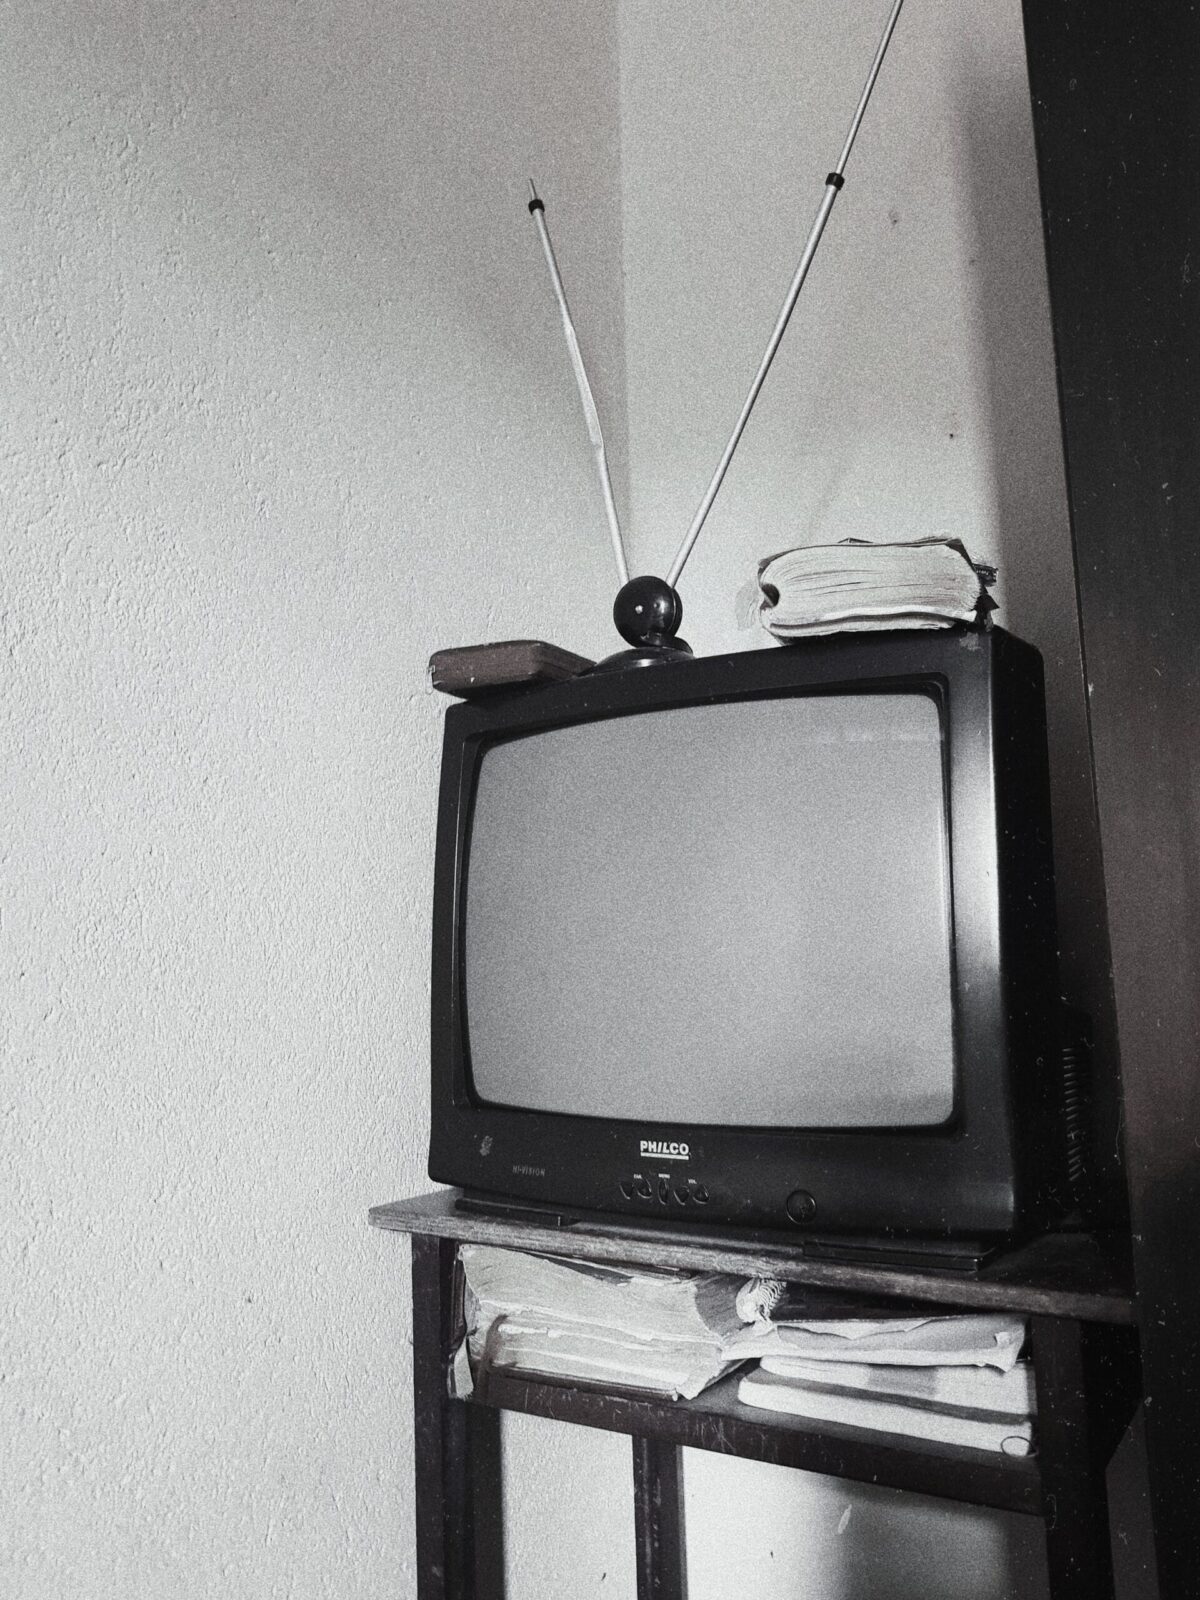 Old tv rabit ears